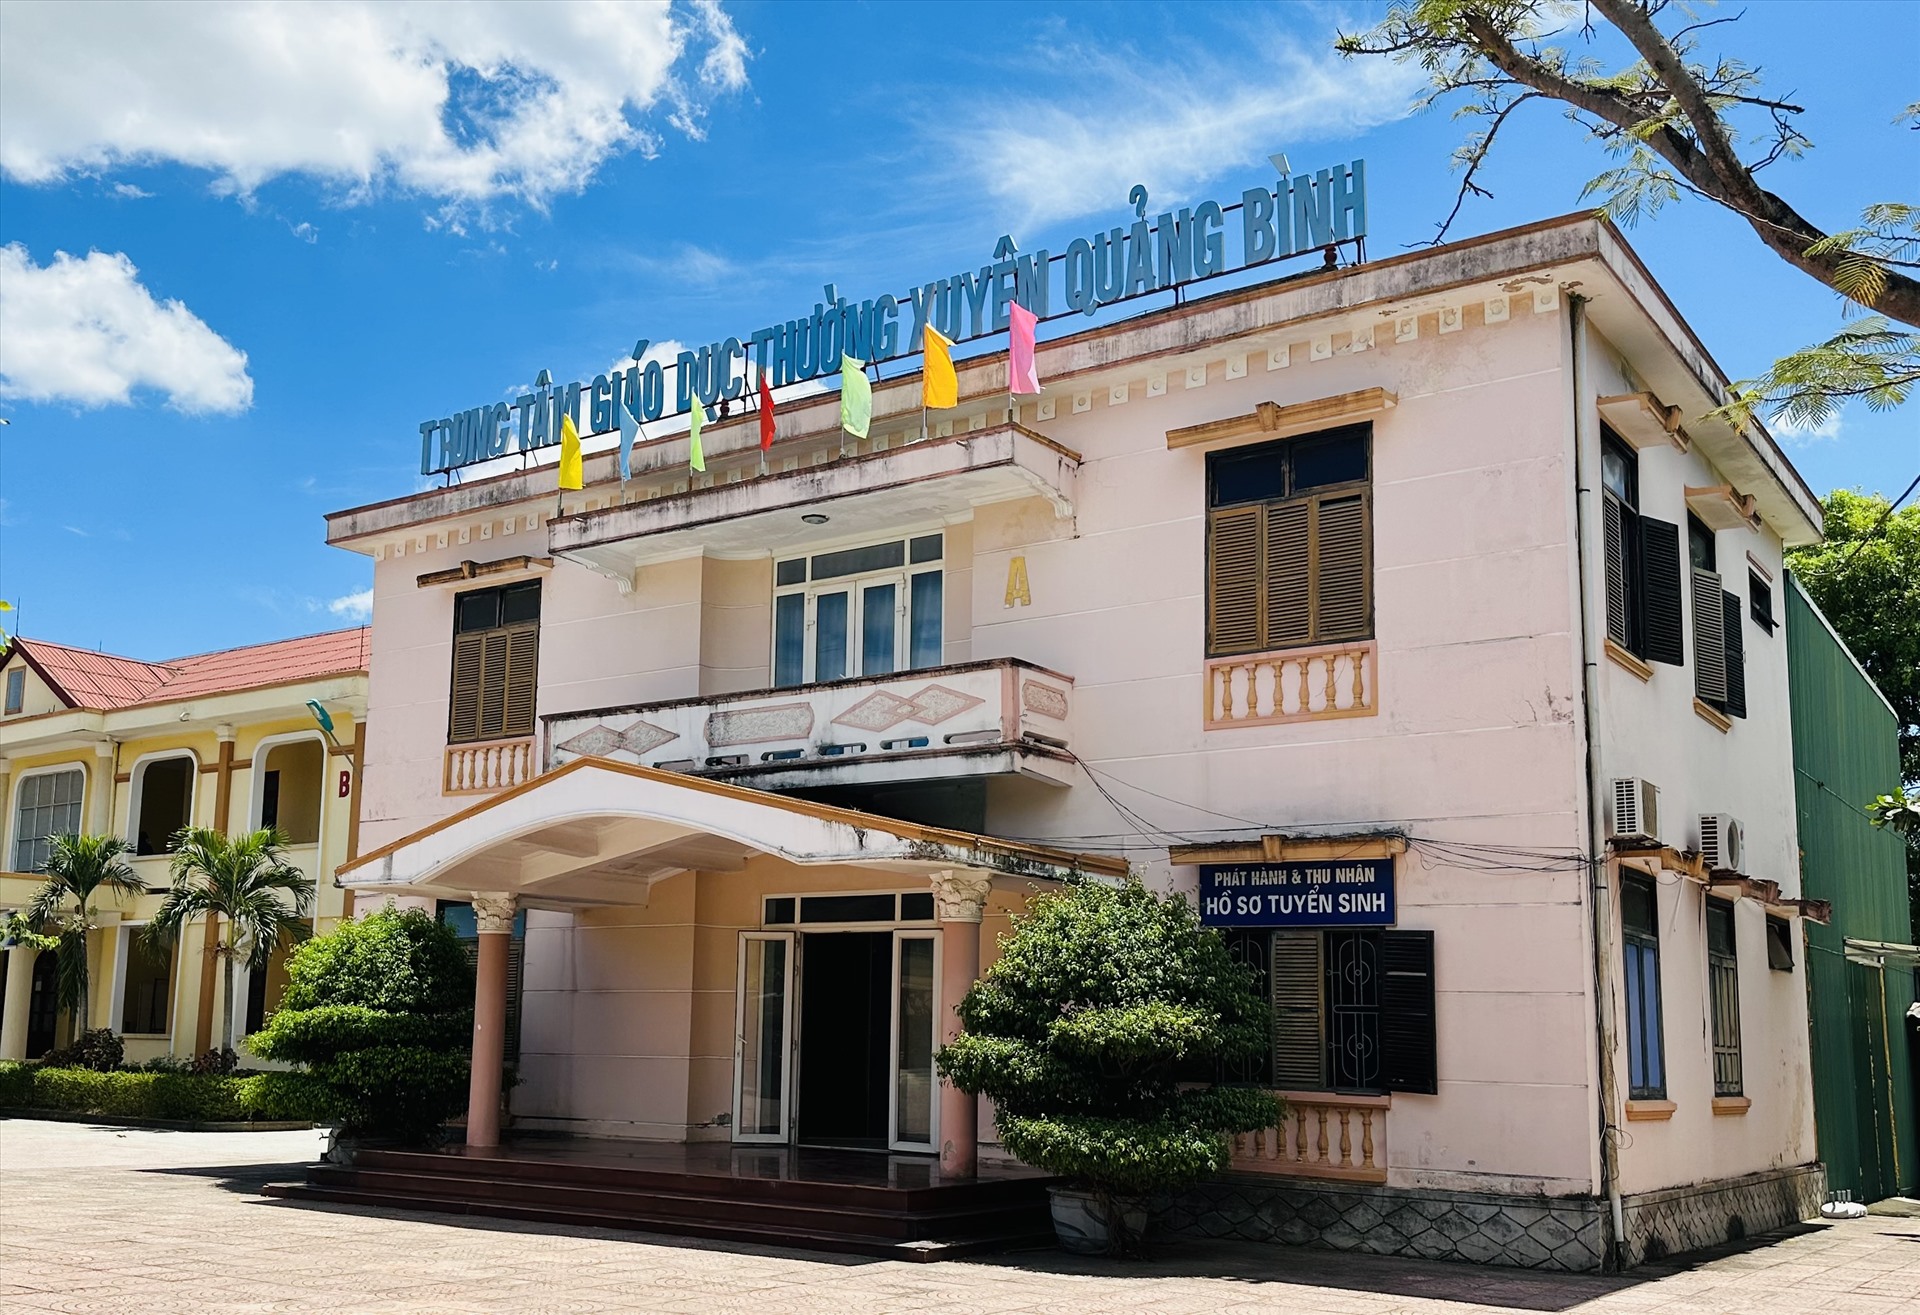 Lãnh đạo Trung tâm Giáo dục thường xuyên tỉnh Quảng Bình nêu rõ việc đảm bảo quyền lợi cho học viên, không thể học viên là người chịu hậu quả. Ảnh: Lê Phi Long